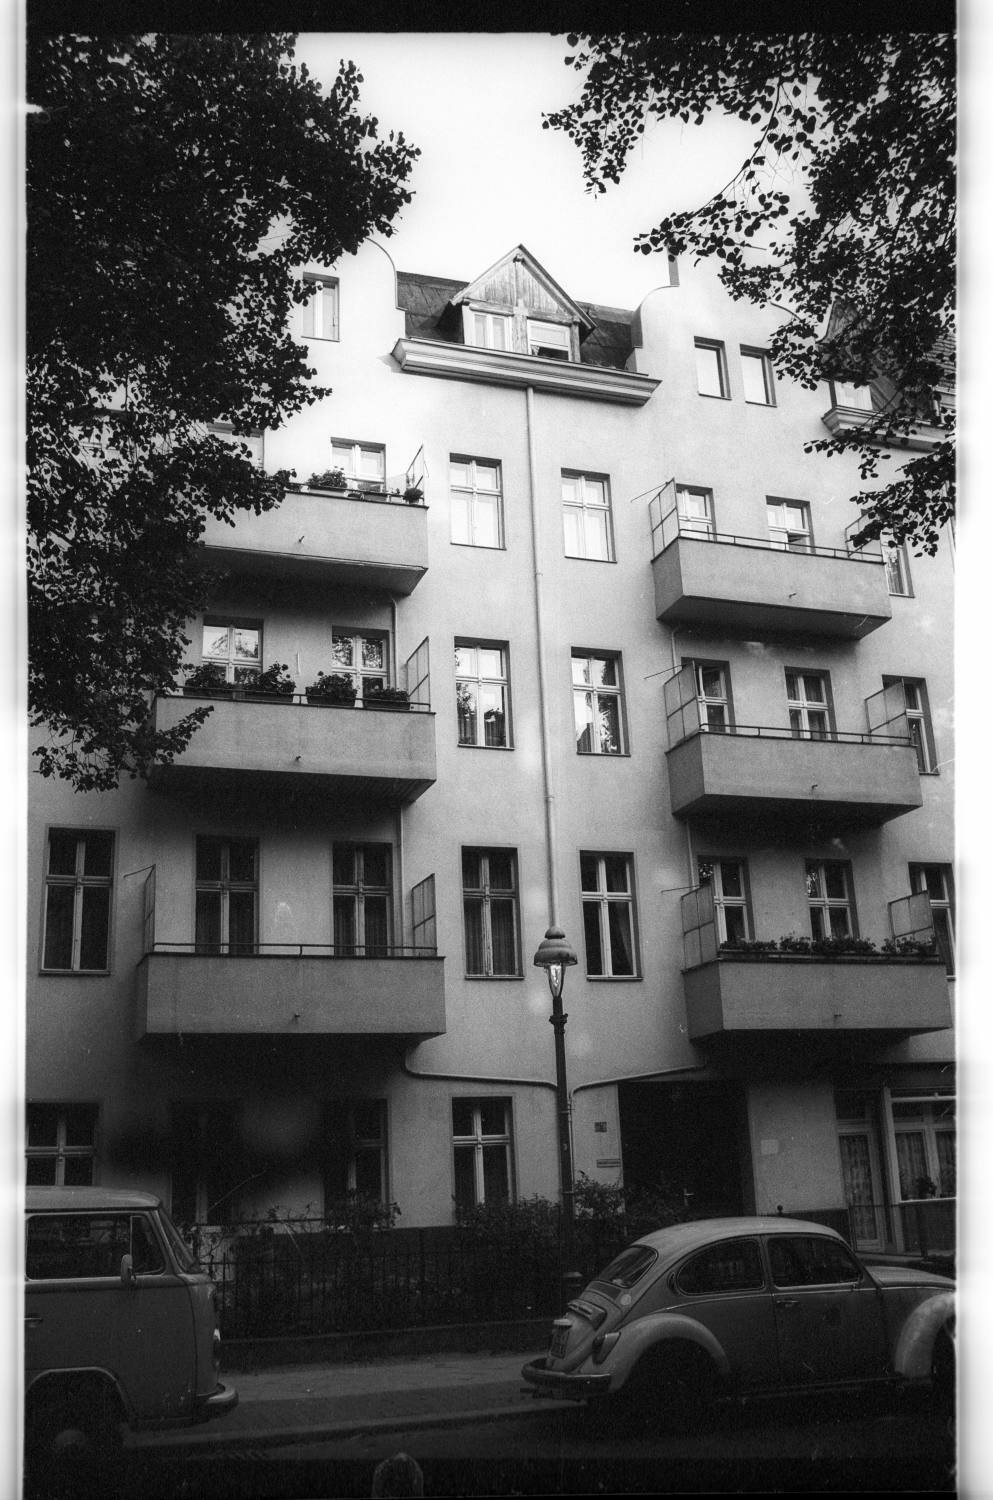 Kleinbildnegative: Mietshaus, Menzelstraße, 1981 (Museen Tempelhof-Schöneberg/Jürgen Henschel RR-F)